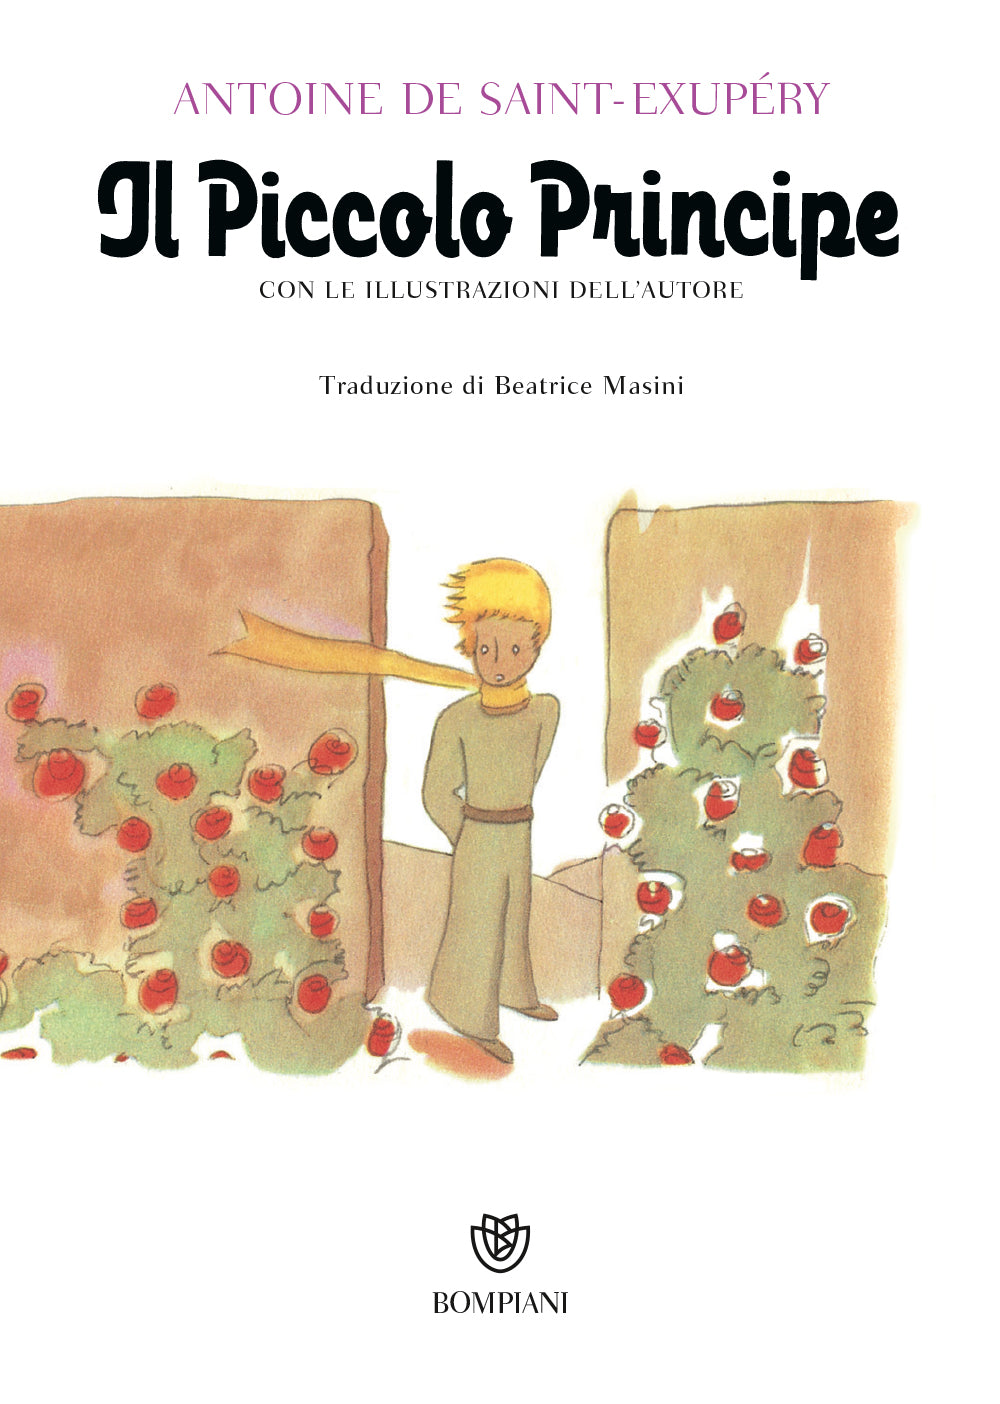 Il Piccolo Principe::Con le illustrazioni dell'autore - Nuova traduzione